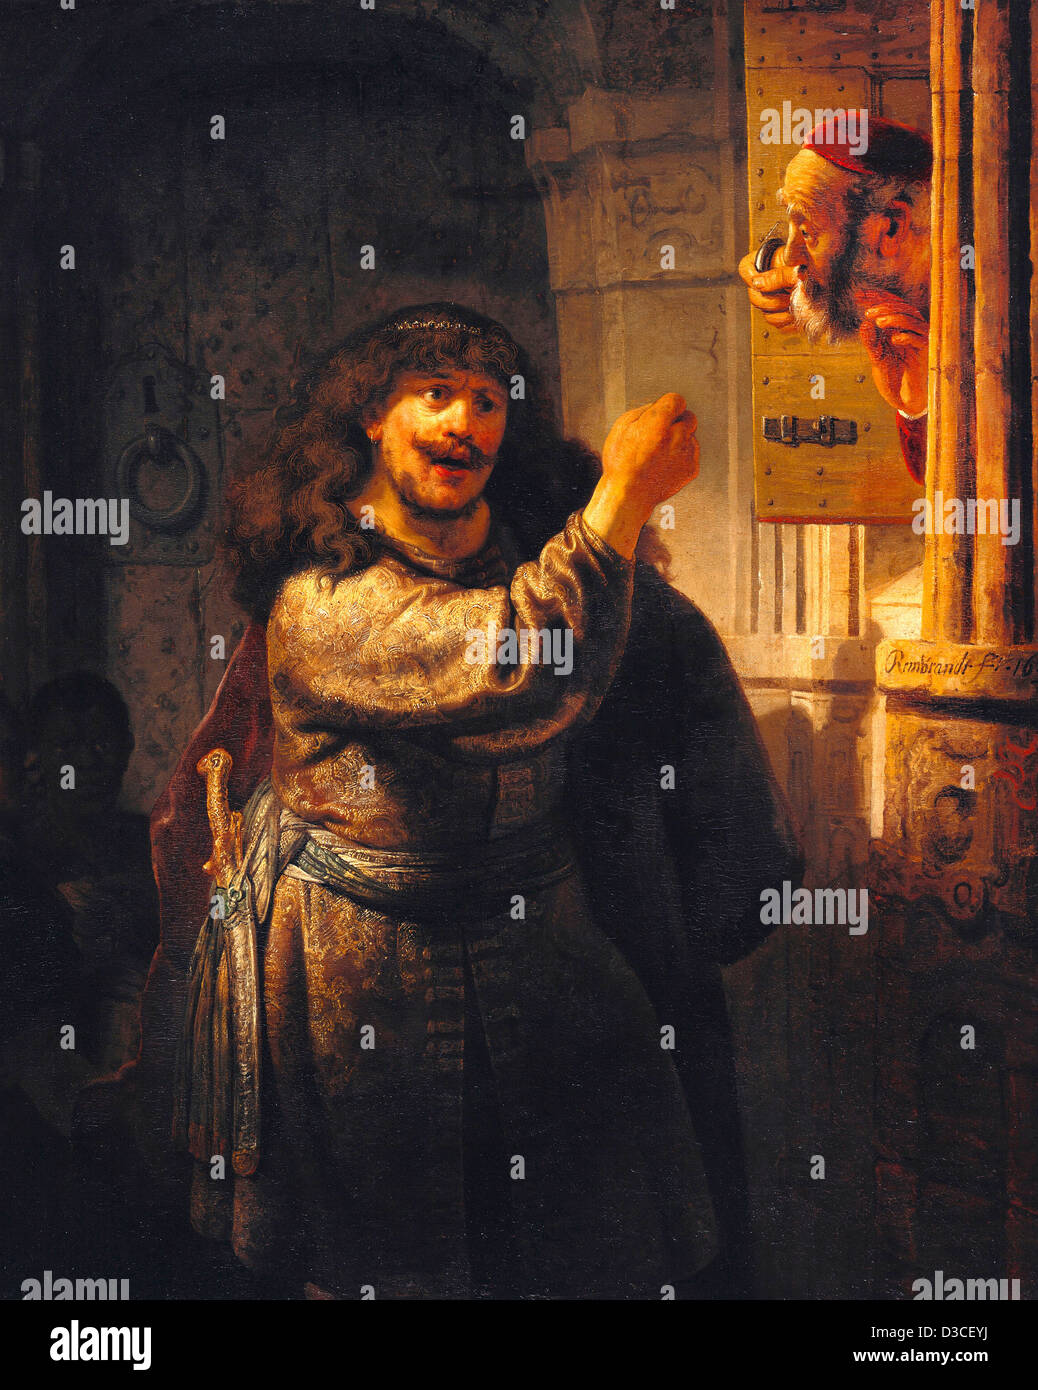 Rembrandt van Rijn, Sansón amenazaron a su suegro. 1635 Óleo sobre lienzo. El barroco. Gemaldegalerie, Berlín. Foto de stock